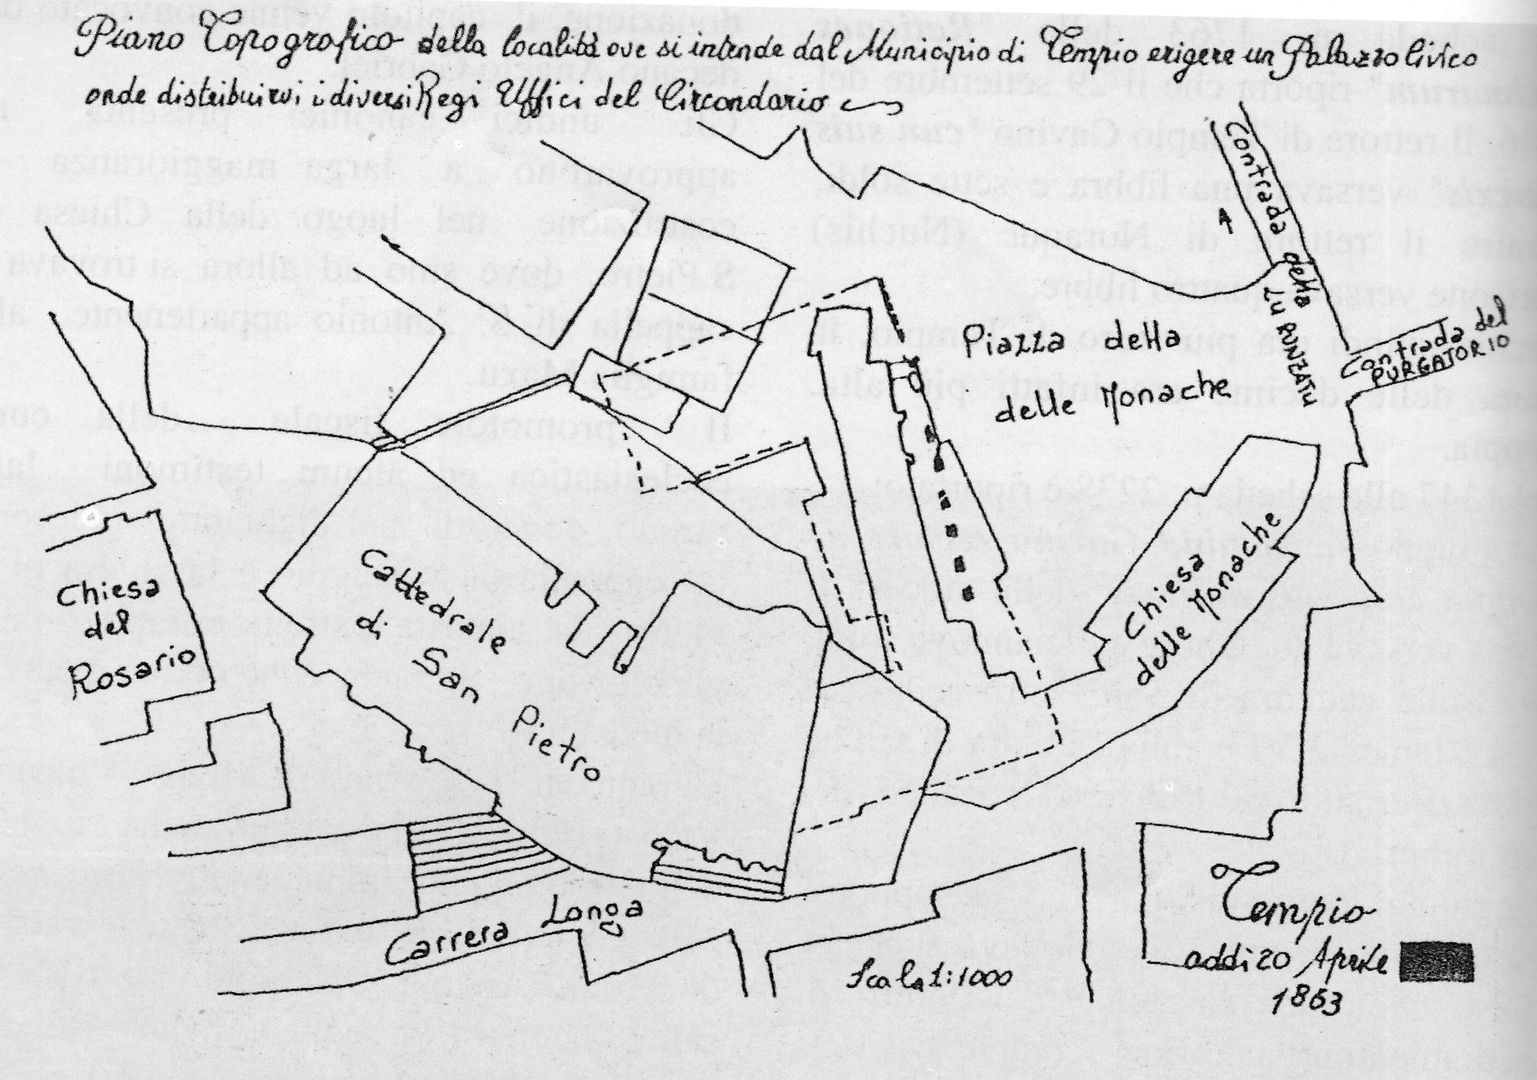 Archivio storico comune Tempio, cartina piazza delle monache, 1863